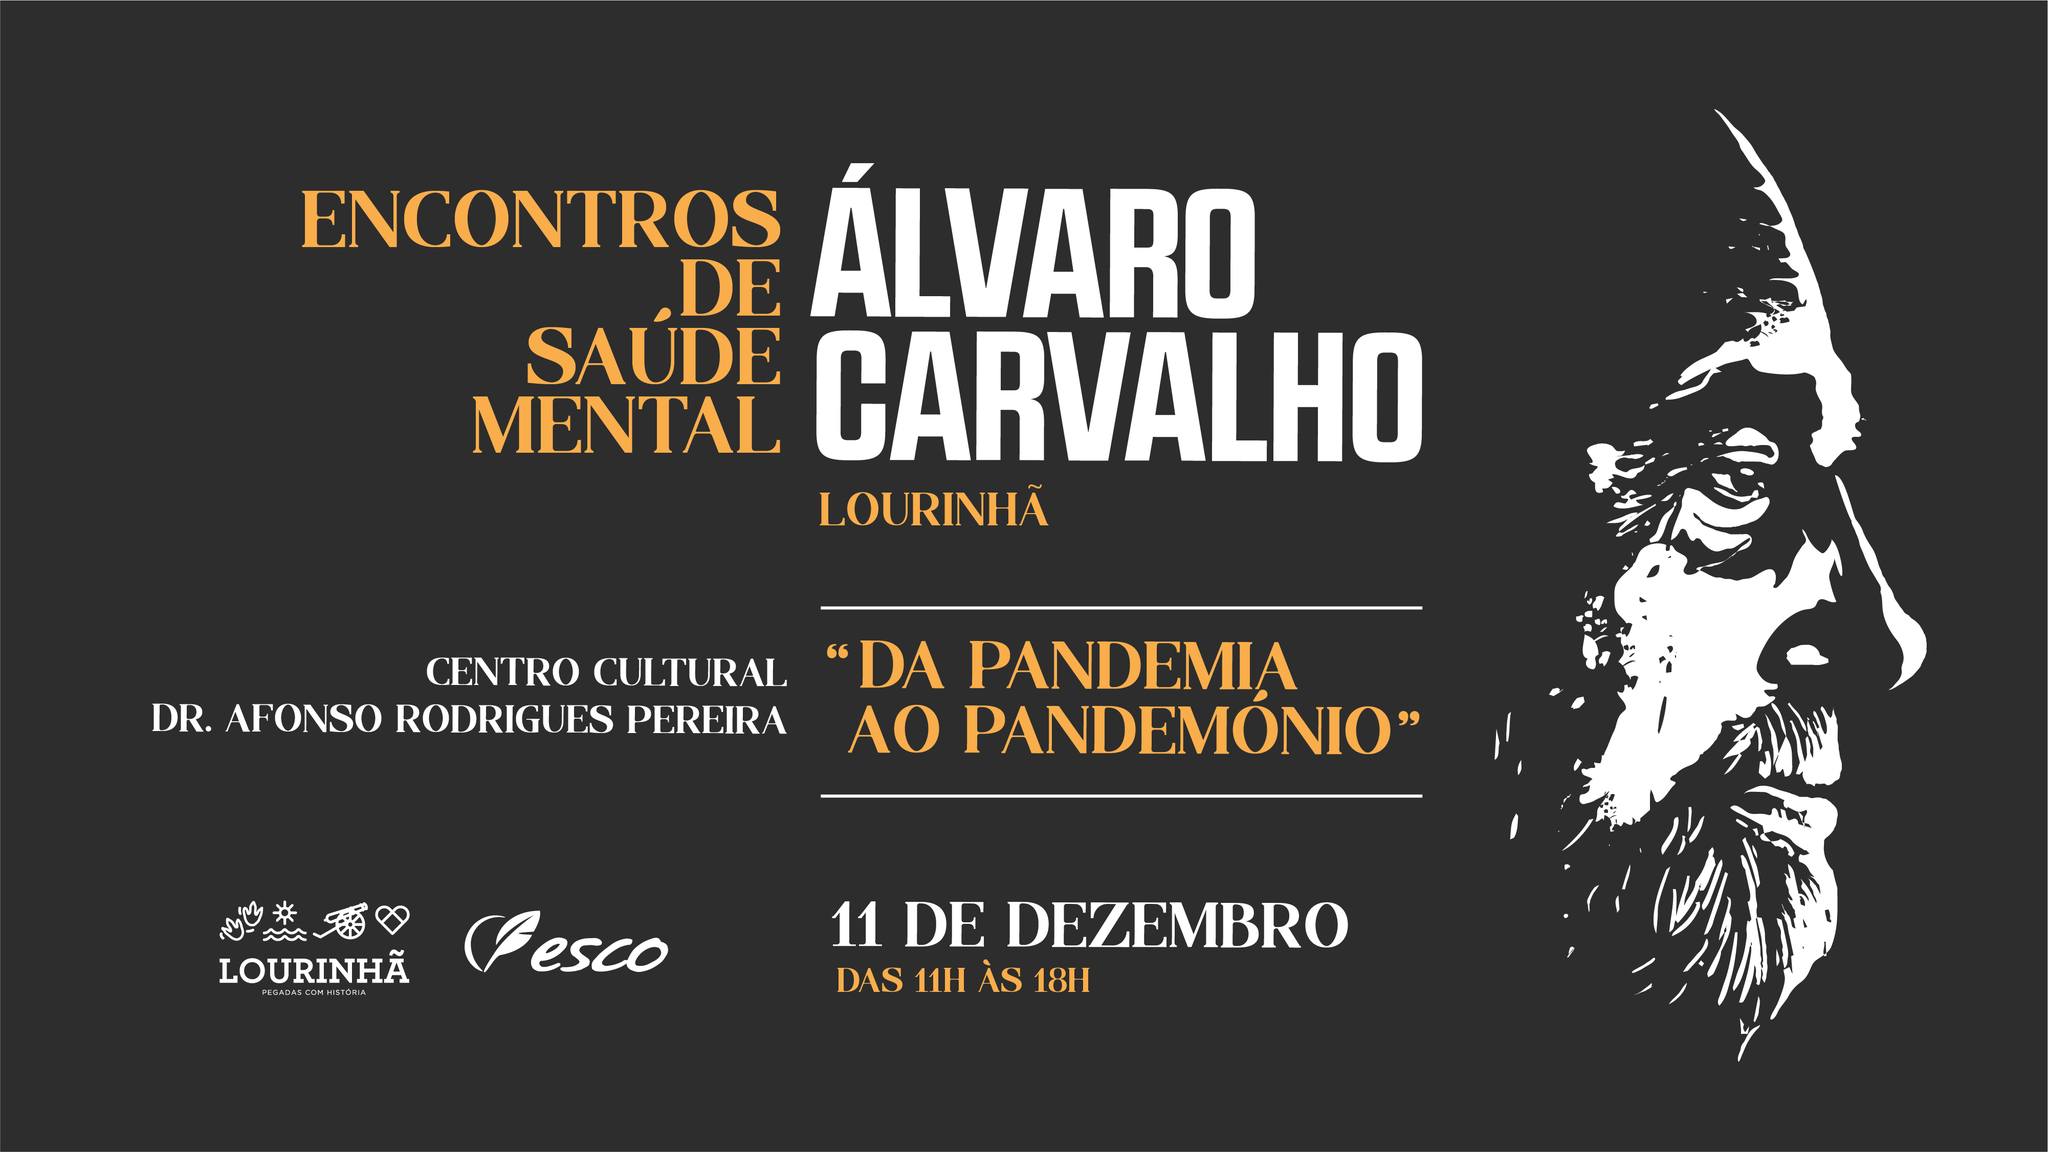 Encontros de Saúde Mental Álvaro Carvalho, 'Da pandemia ao pandemónio'